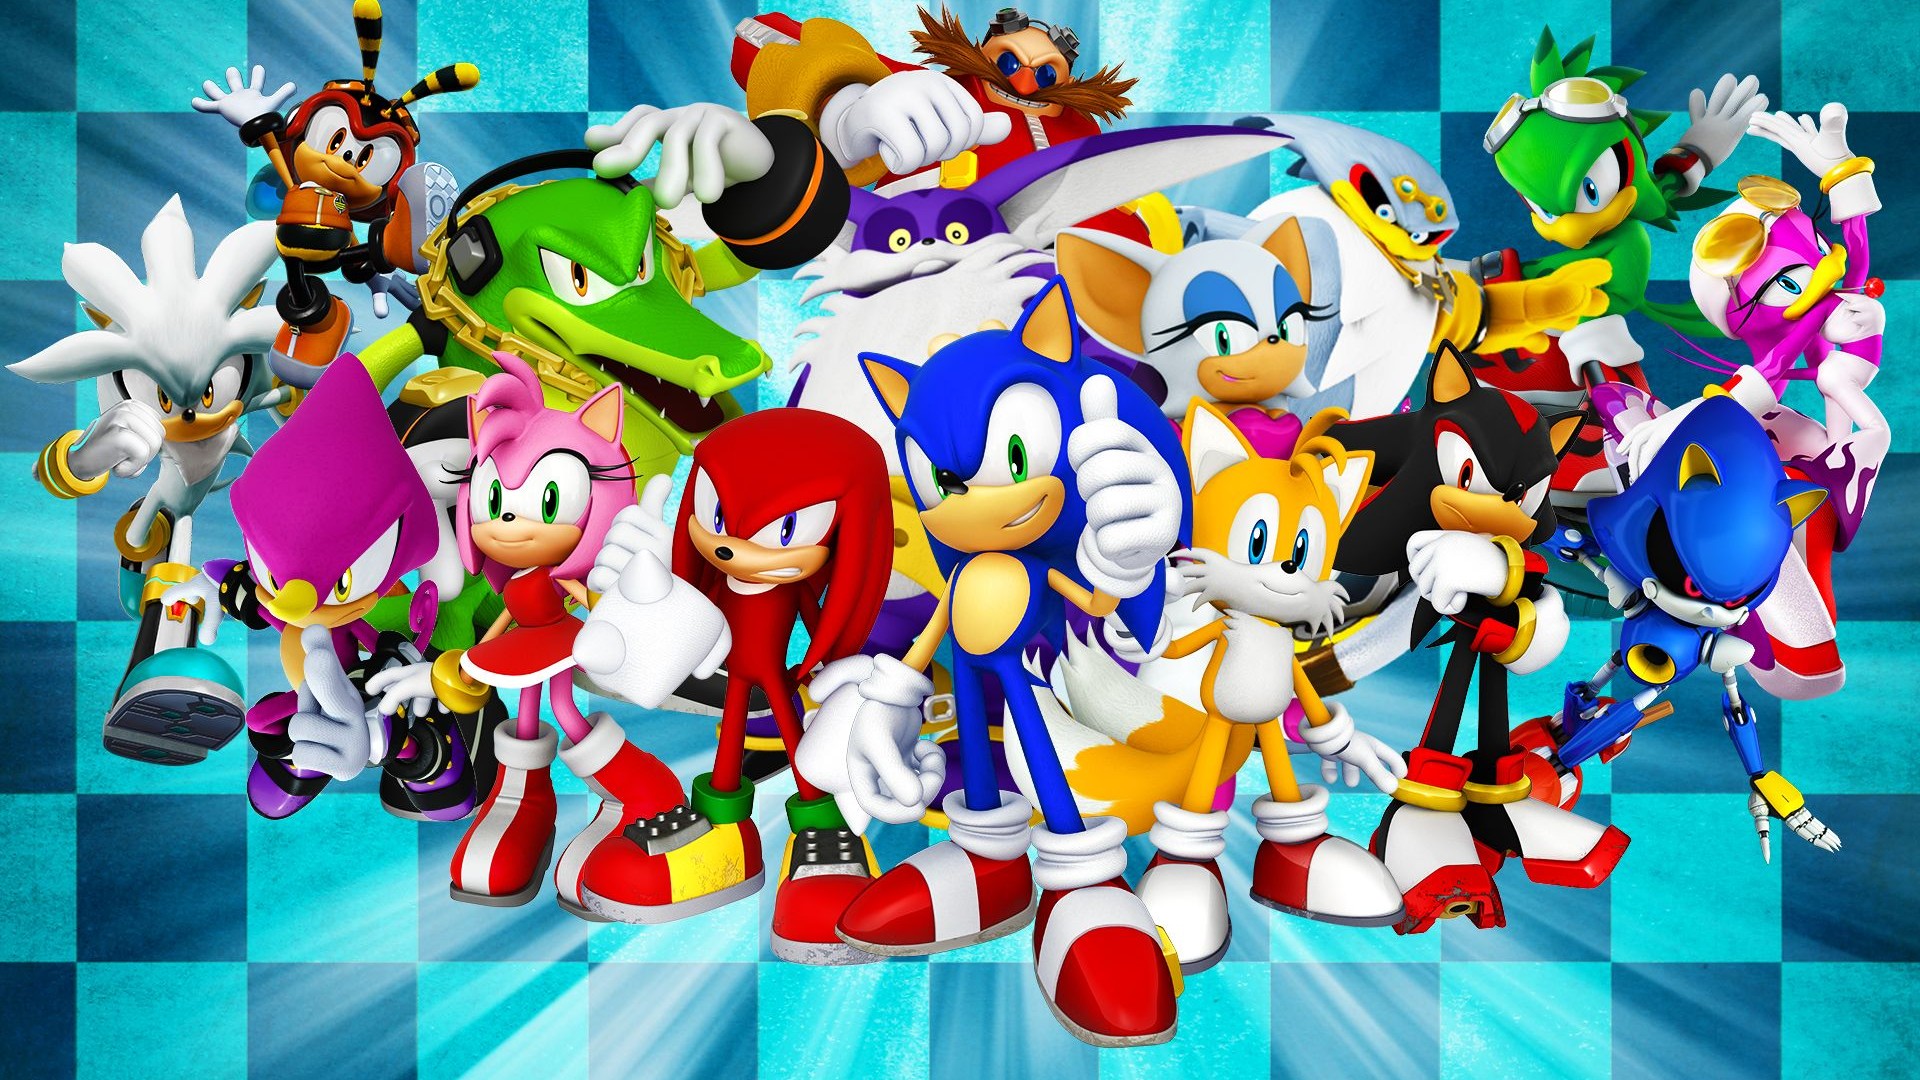 APROVEITE: Jogo Sonic The Hedgehog 2 de Graça 